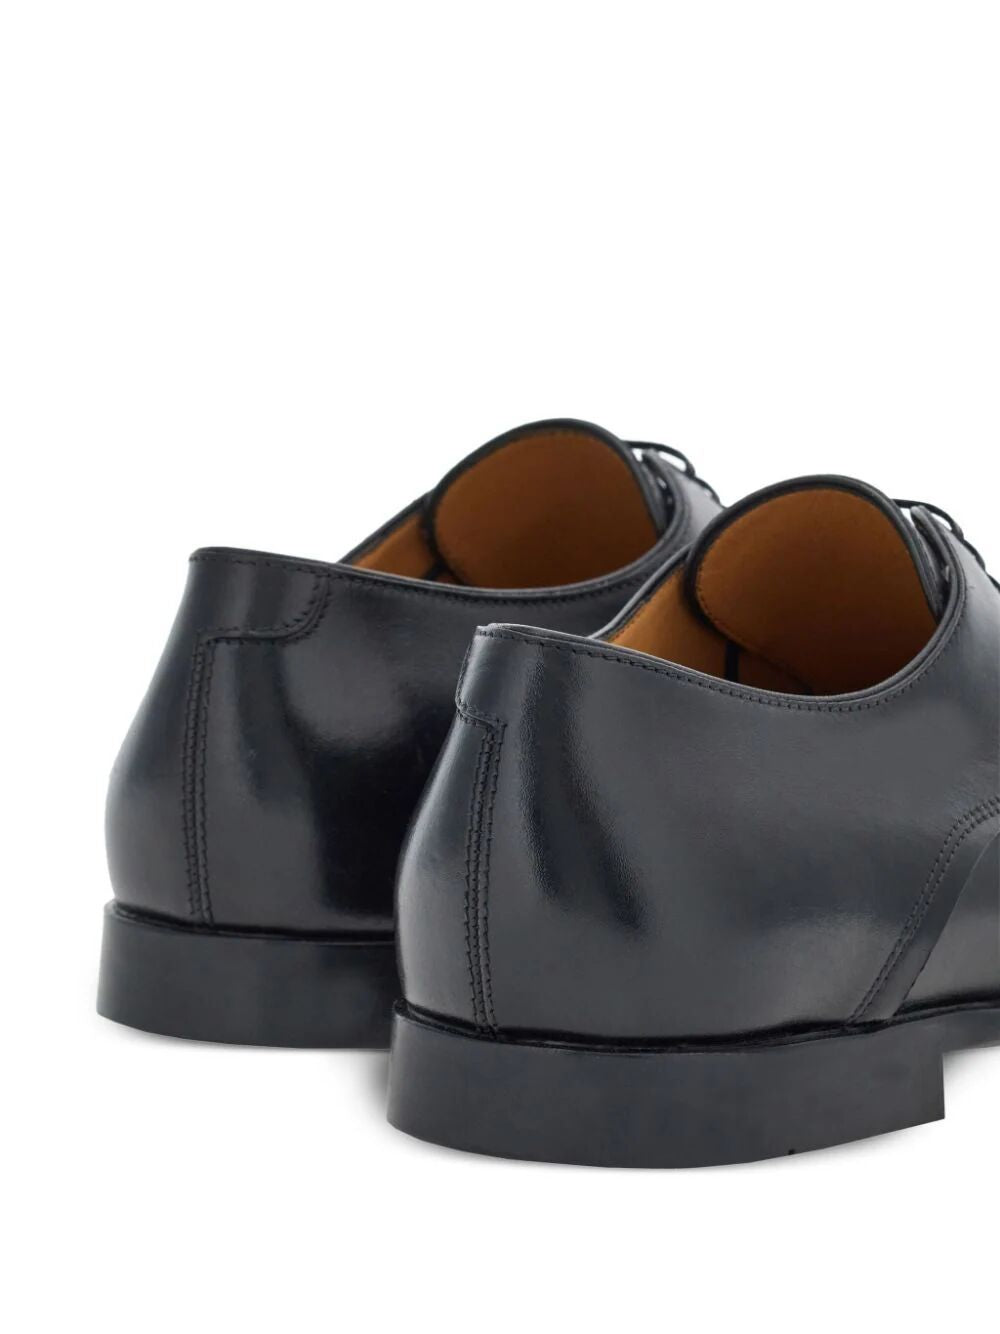 FERRAGAMO Black Lace-Up Leather Derby Dress Shoes for Men